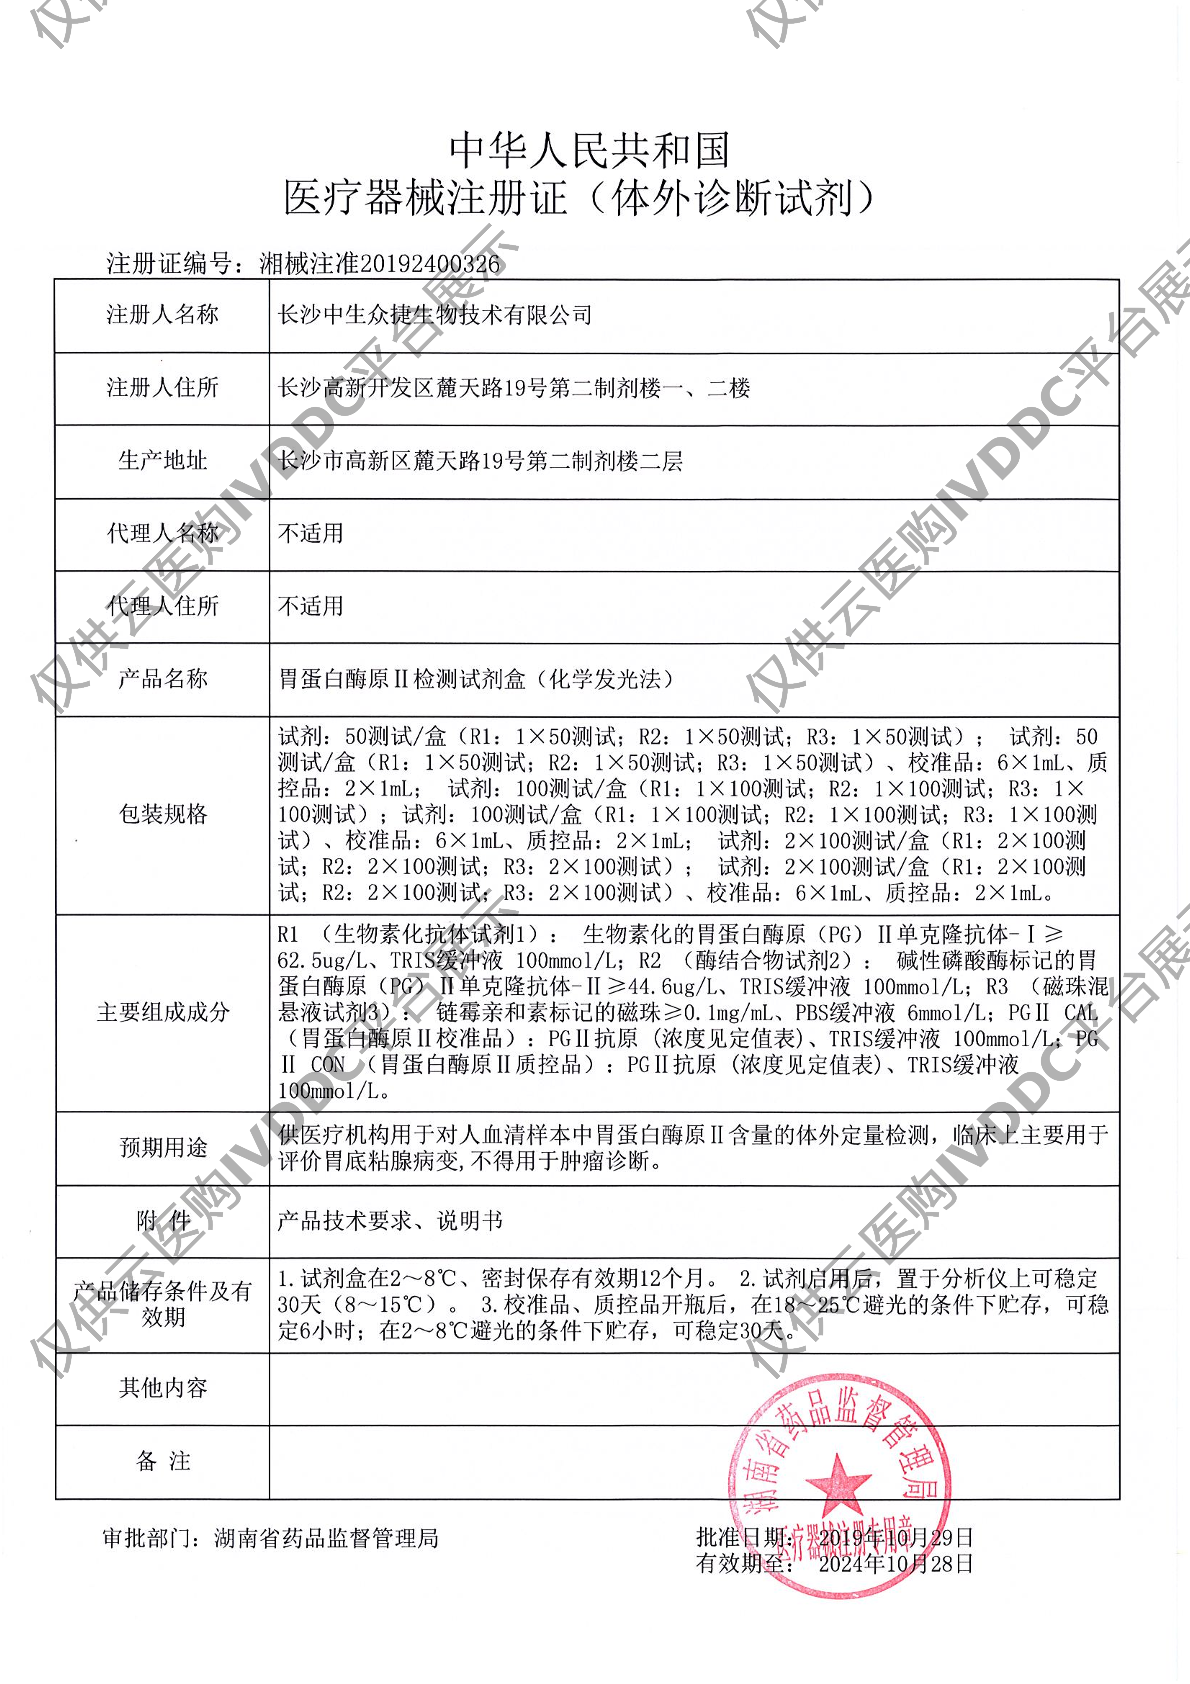 【中生众捷】胃蛋白酶原Ⅱ检测试剂盒(化学发光法)/100T注册证